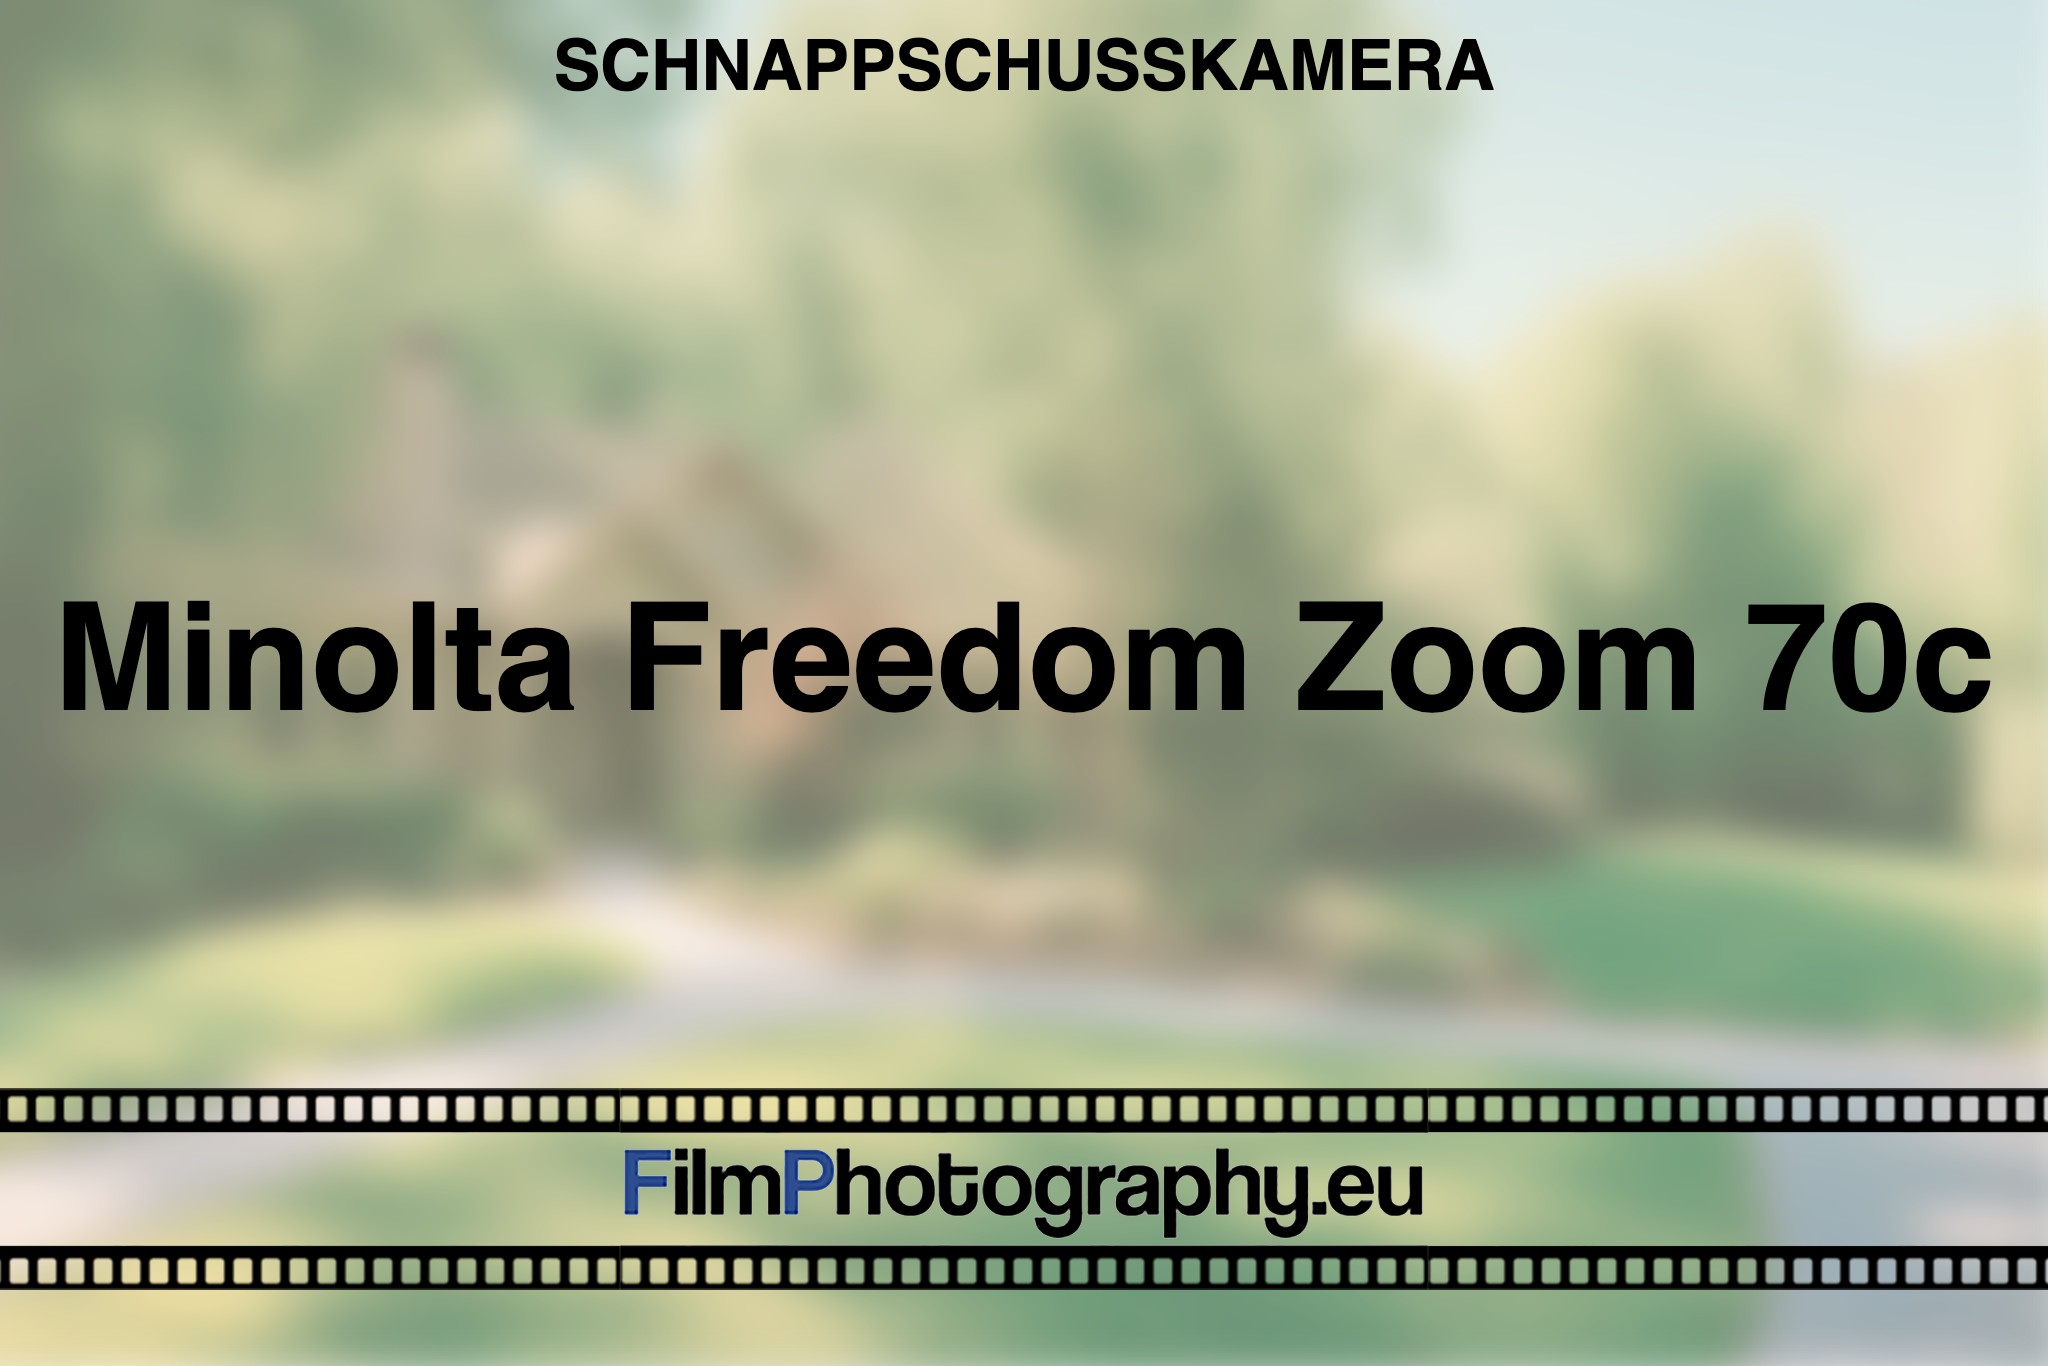 minolta-freedom-zoom-70c-schnappschusskamera-bnv